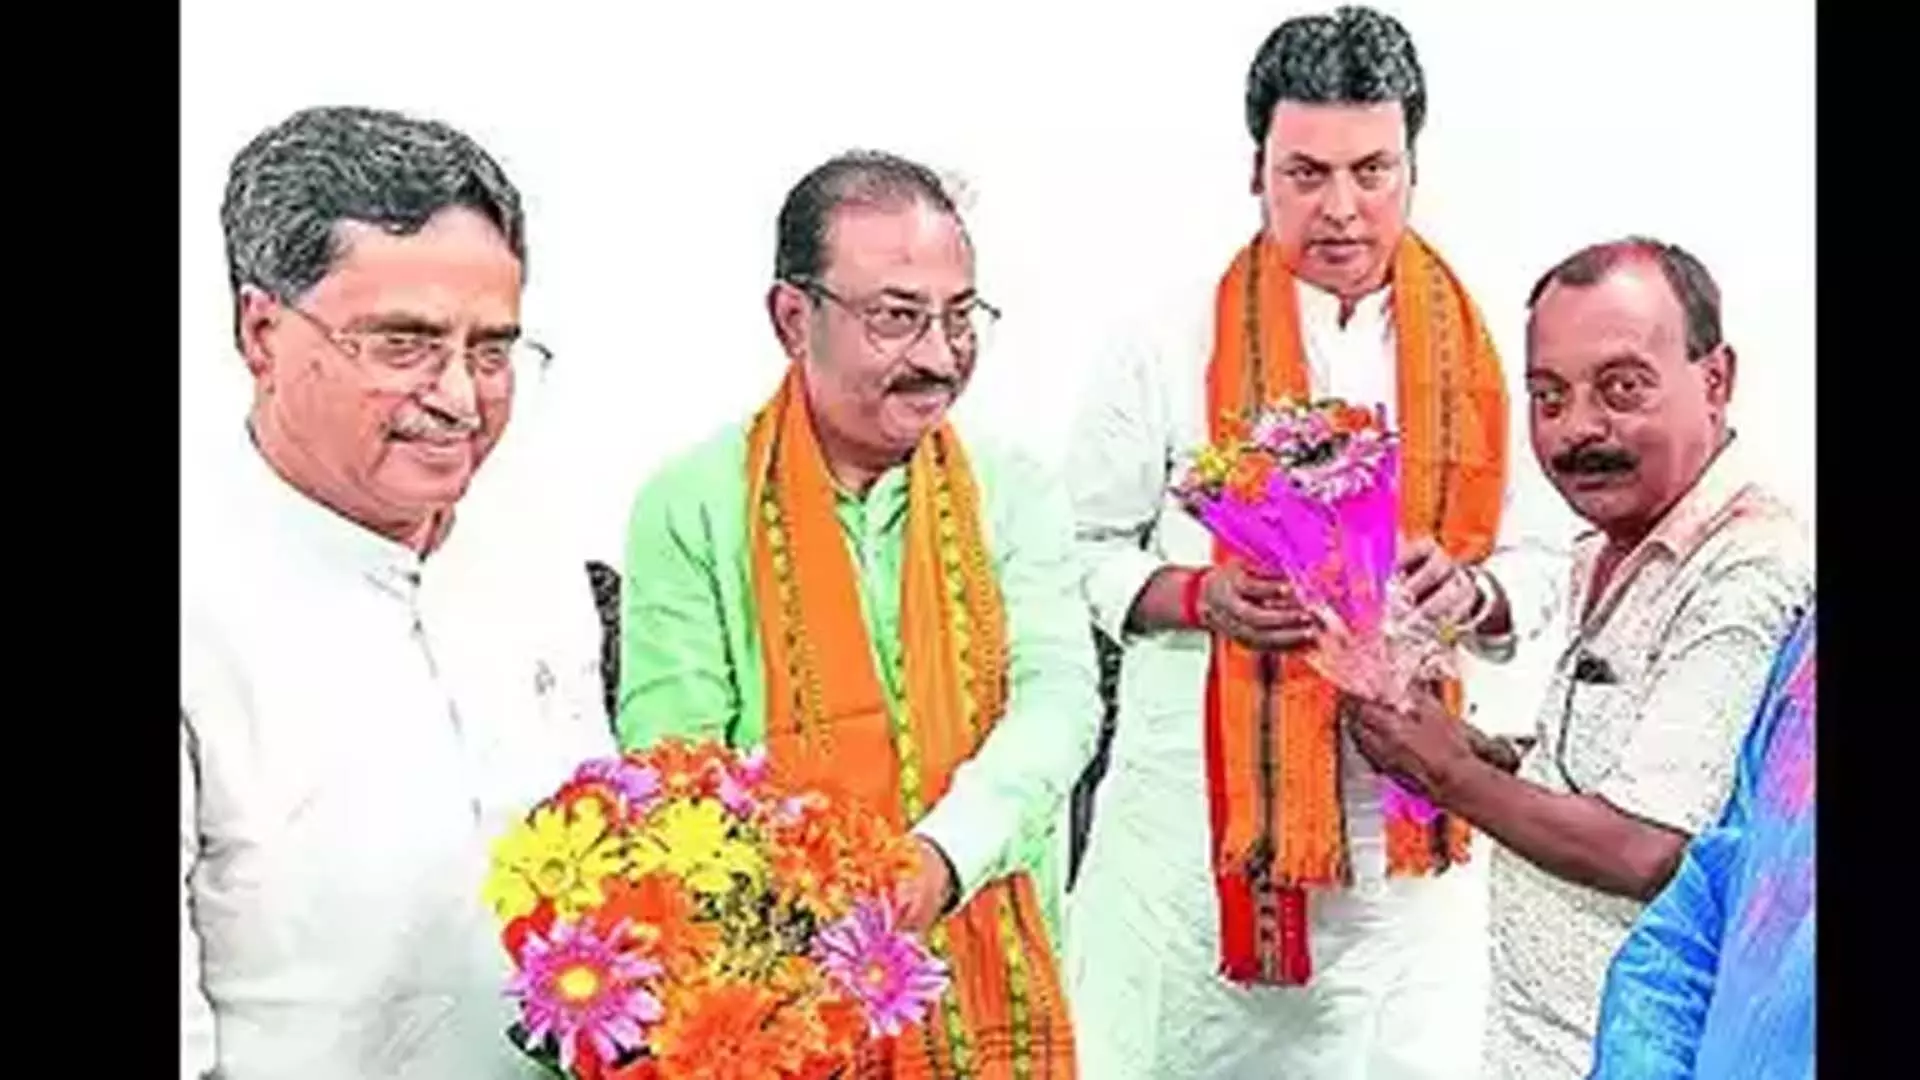 Agartala: त्रिपुरा भाजपा ने दोनों लोकसभा सीटें बरकरार रखीं और रामनगर उपचुनाव जीता